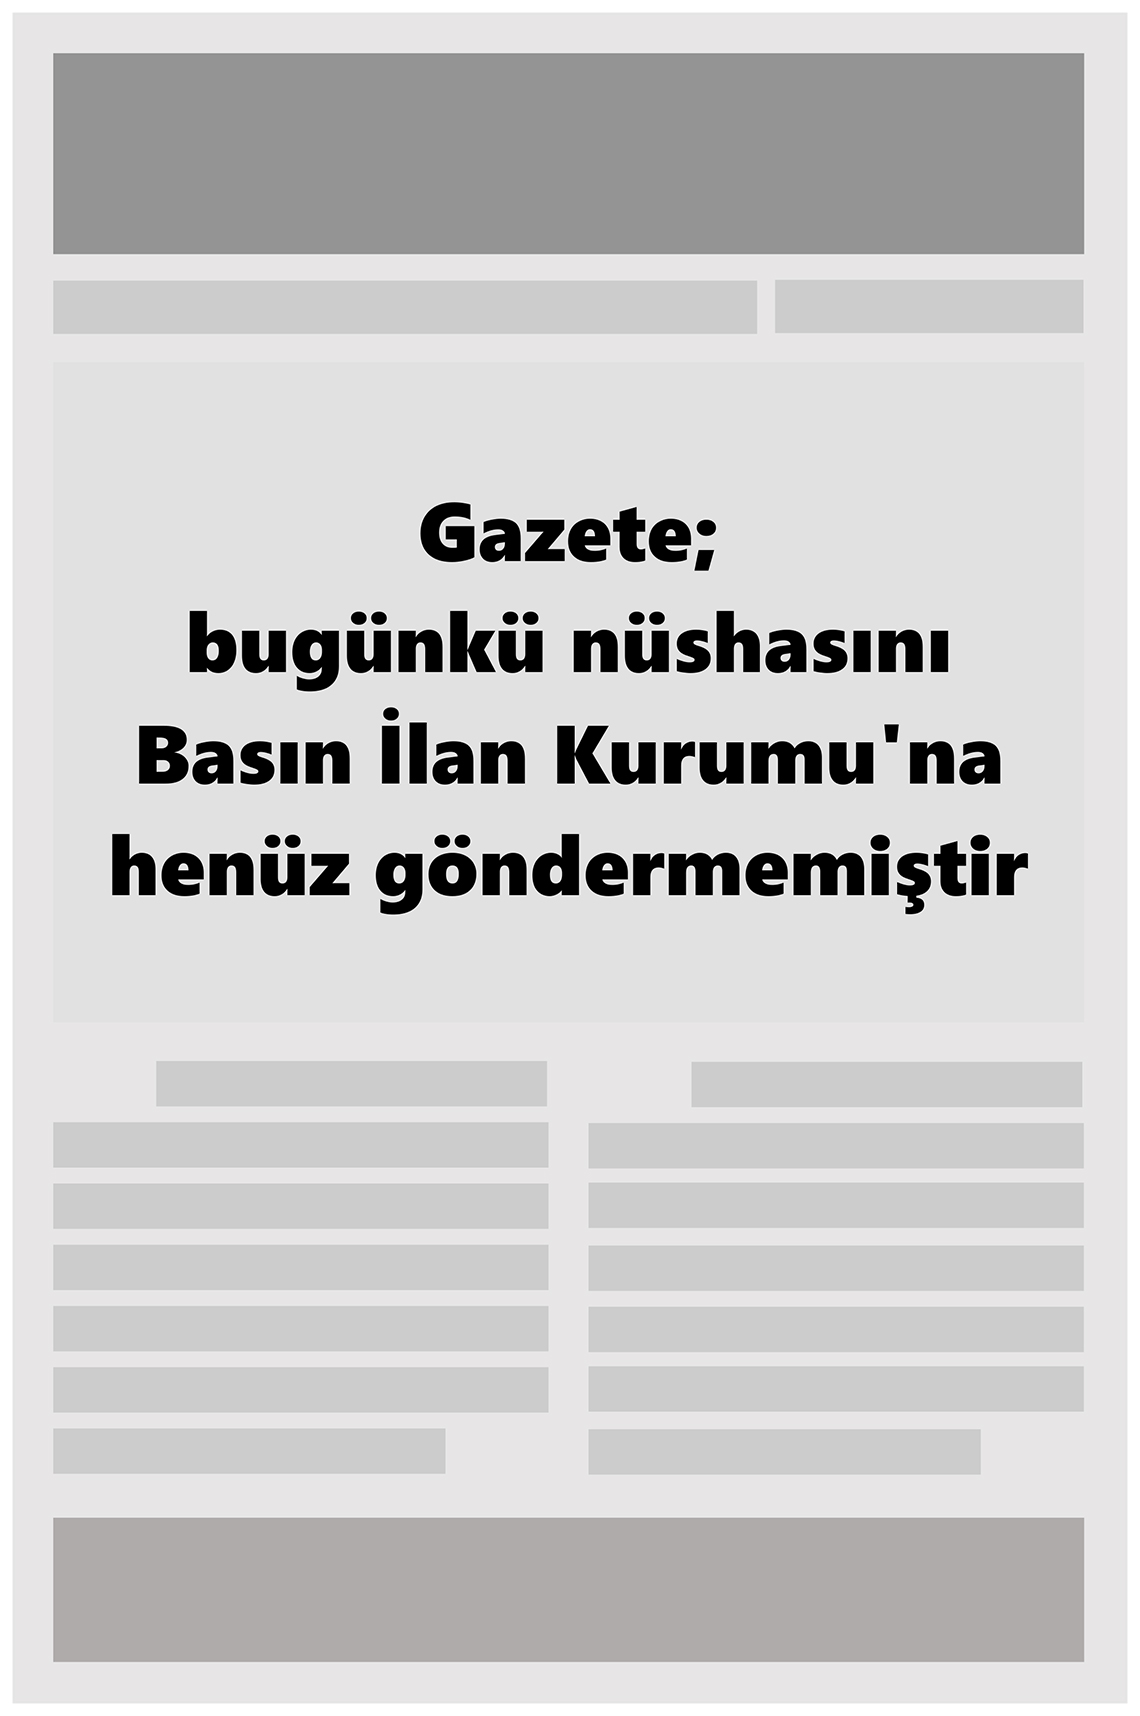 22 Mayıs 2022 Genç Gazete Gazete Manşeti